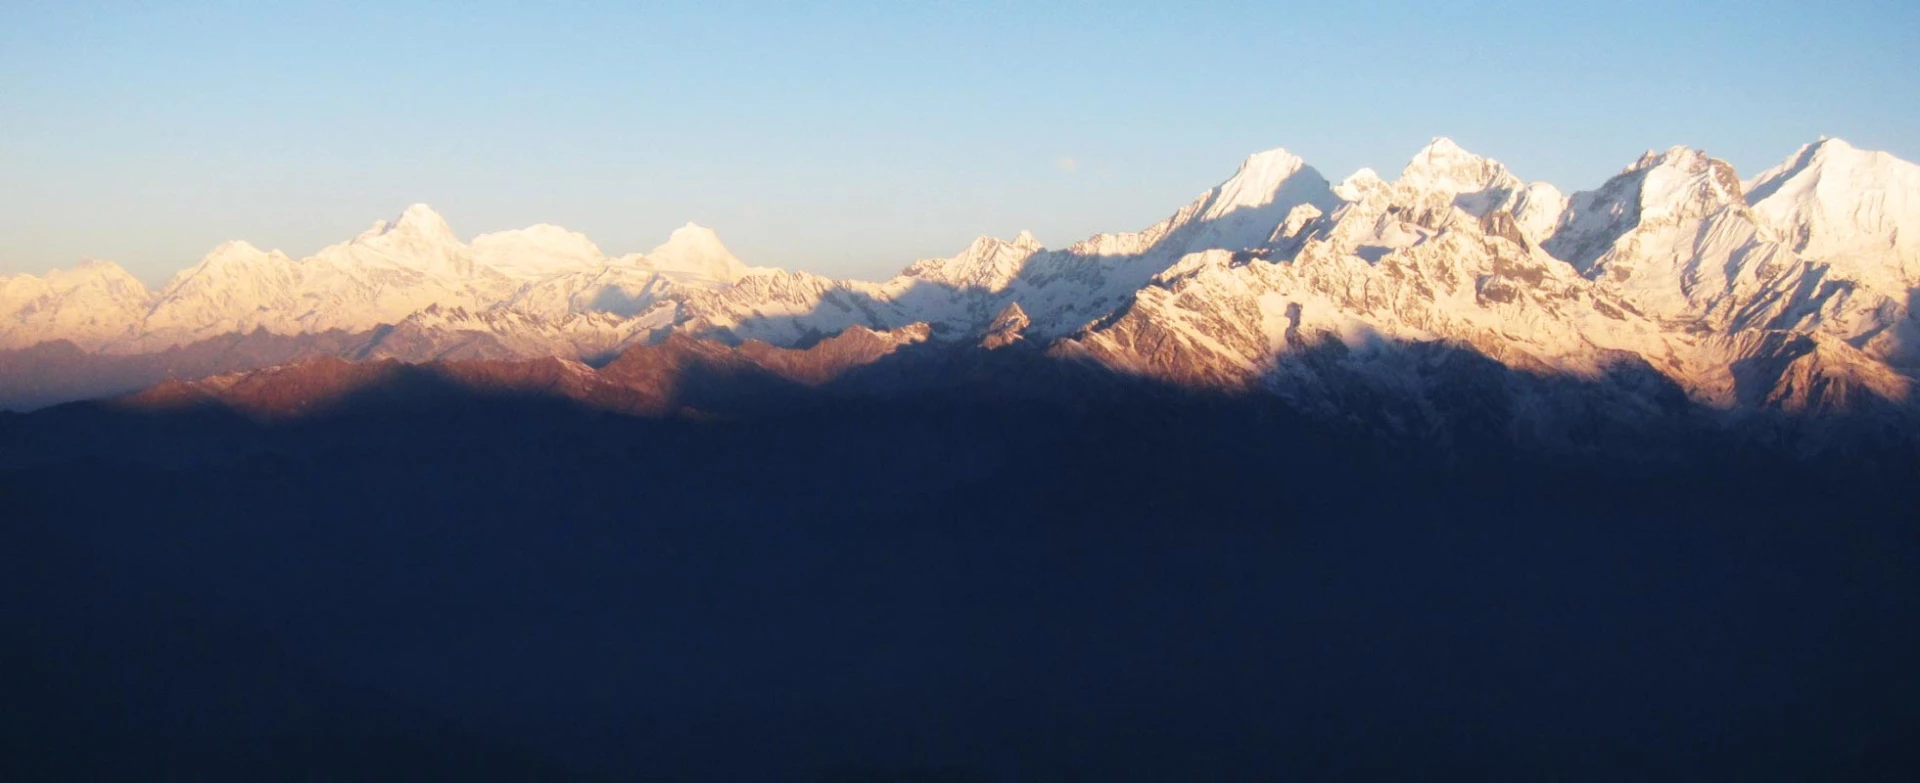 Langtang & Ganesh Himal Region